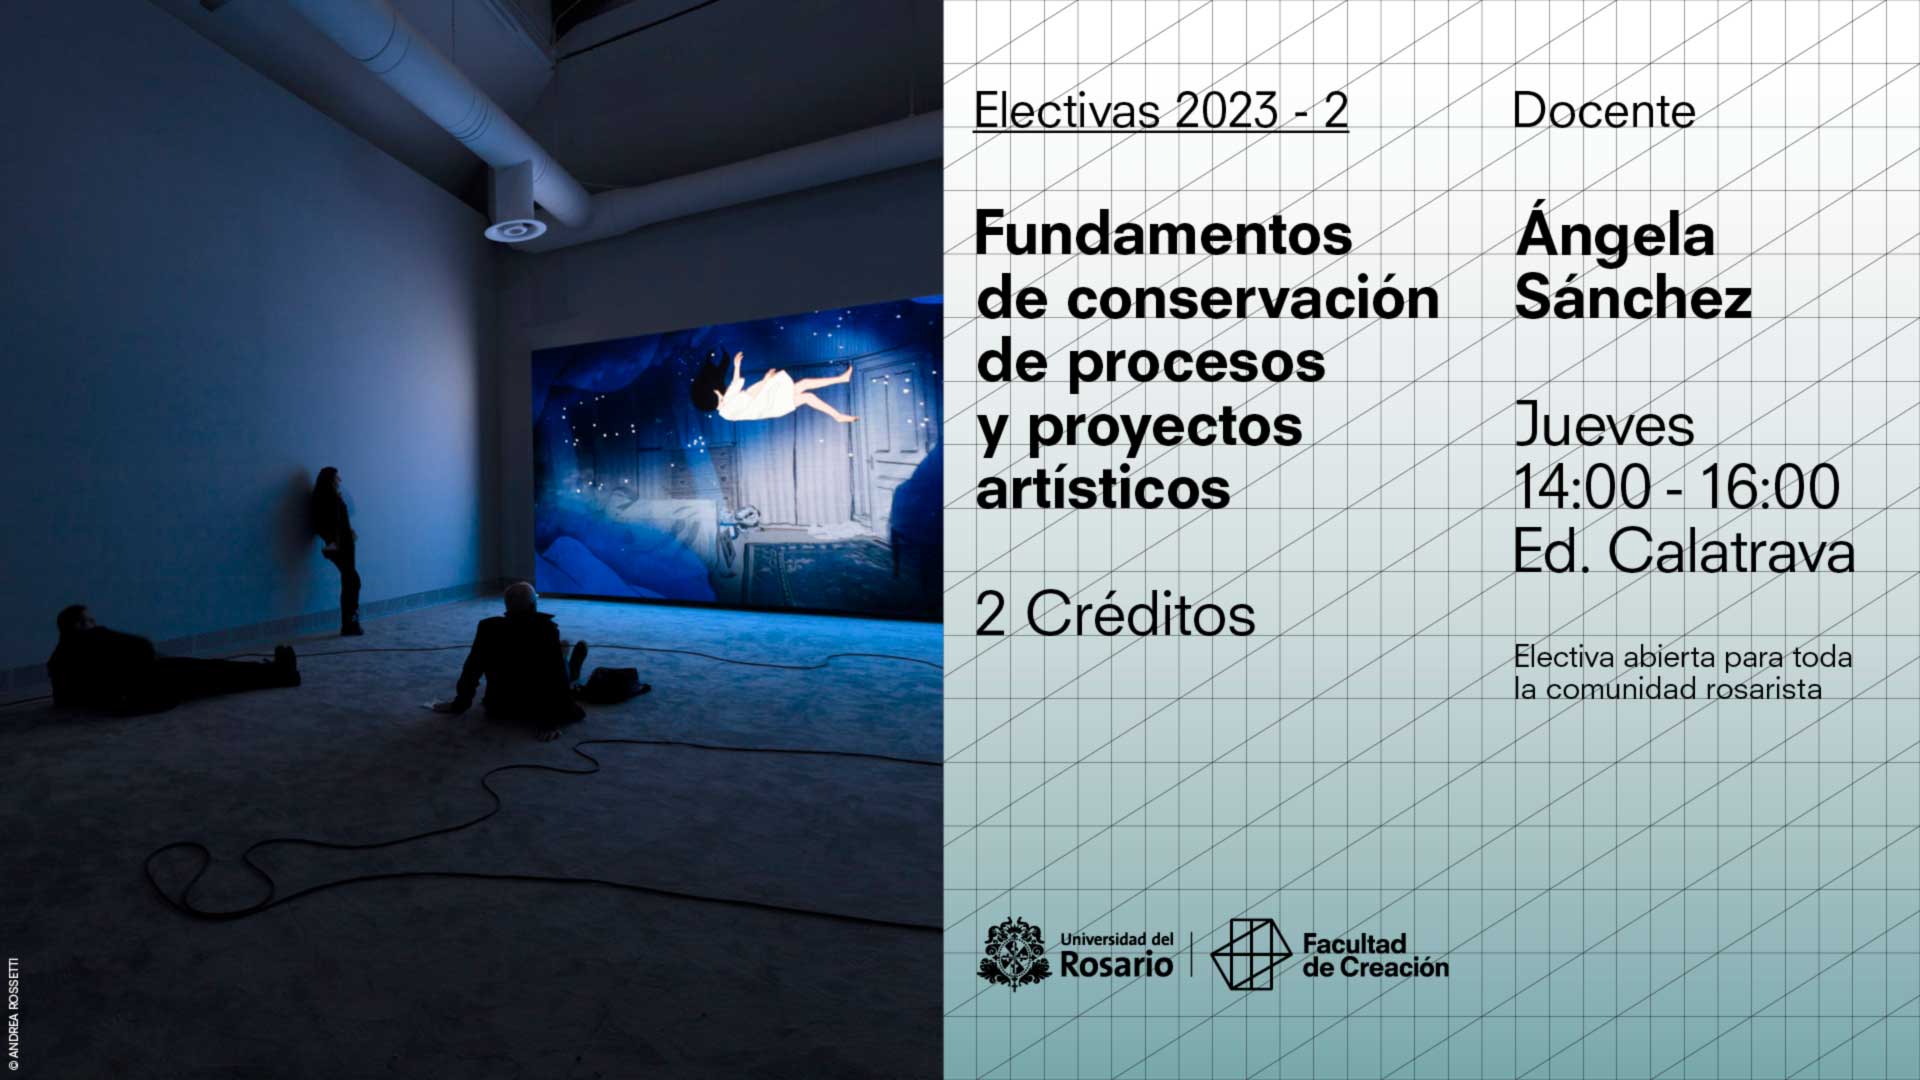 Fundamentos de conservación de procesos y proyectos artísticos